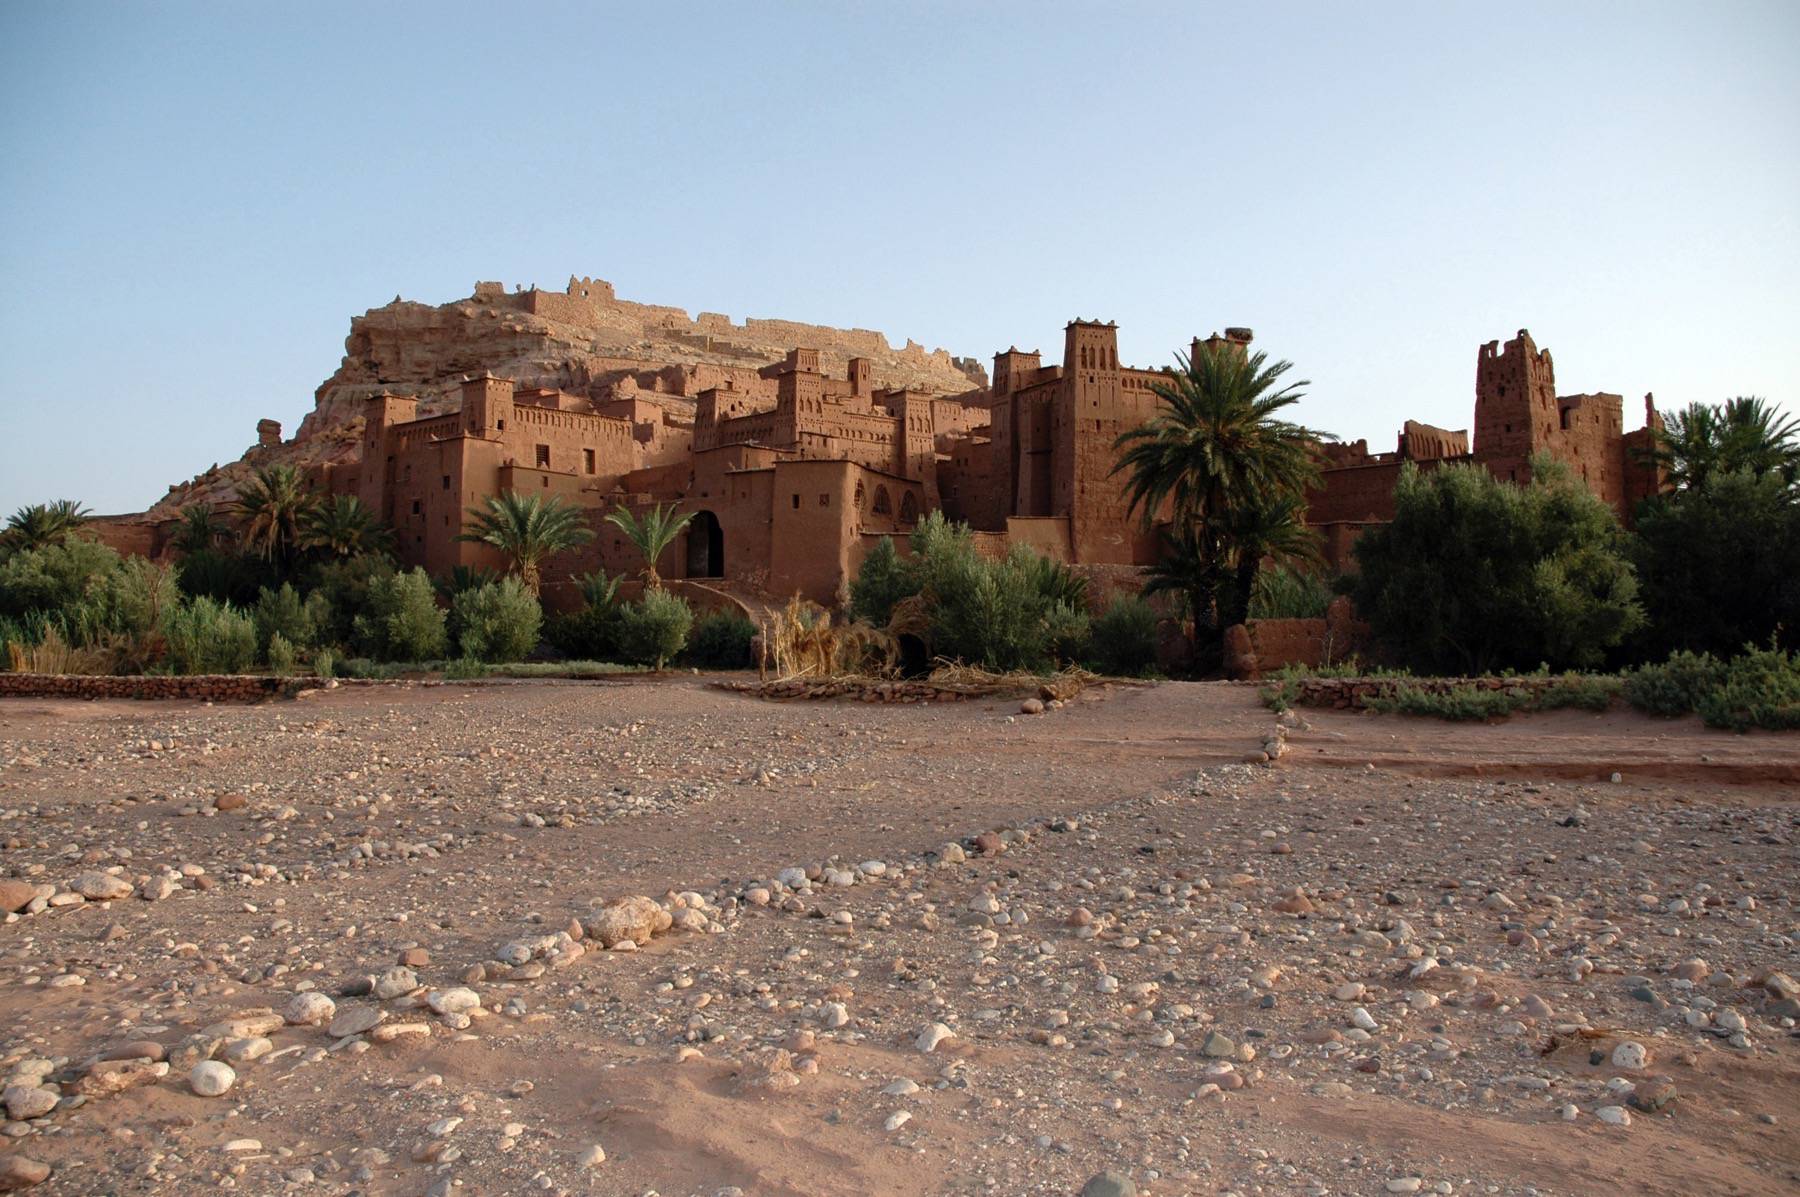 Ksar of Ait Ben Haddou, Ouarzazate, Morocco.